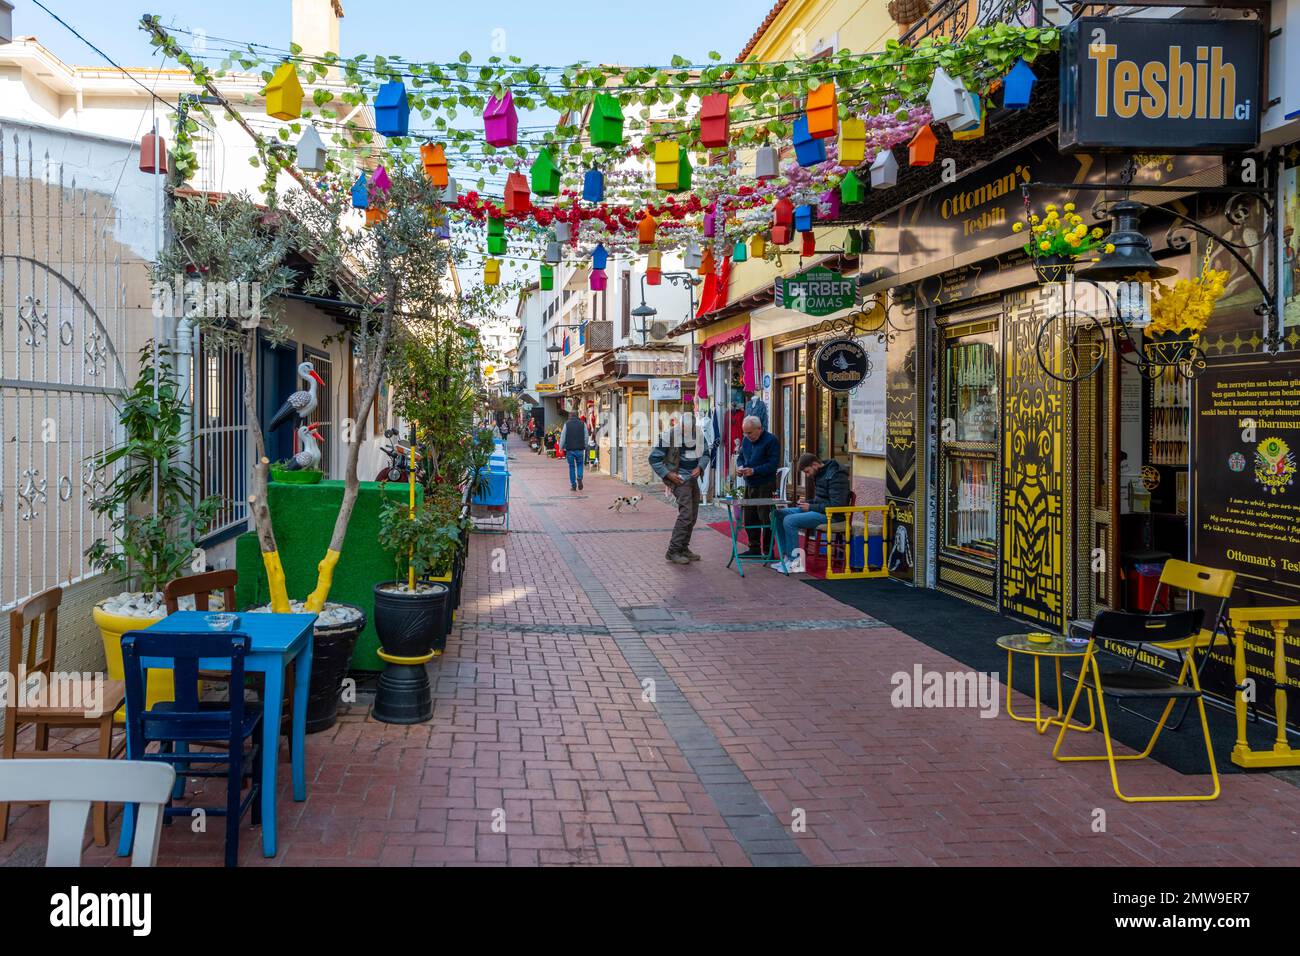 Une rangée colorée de magasins et cafés dans le quartier commerçant un quartier de marché de la ville portuaire turque de Kusadasi, Turquie. Banque D'Images